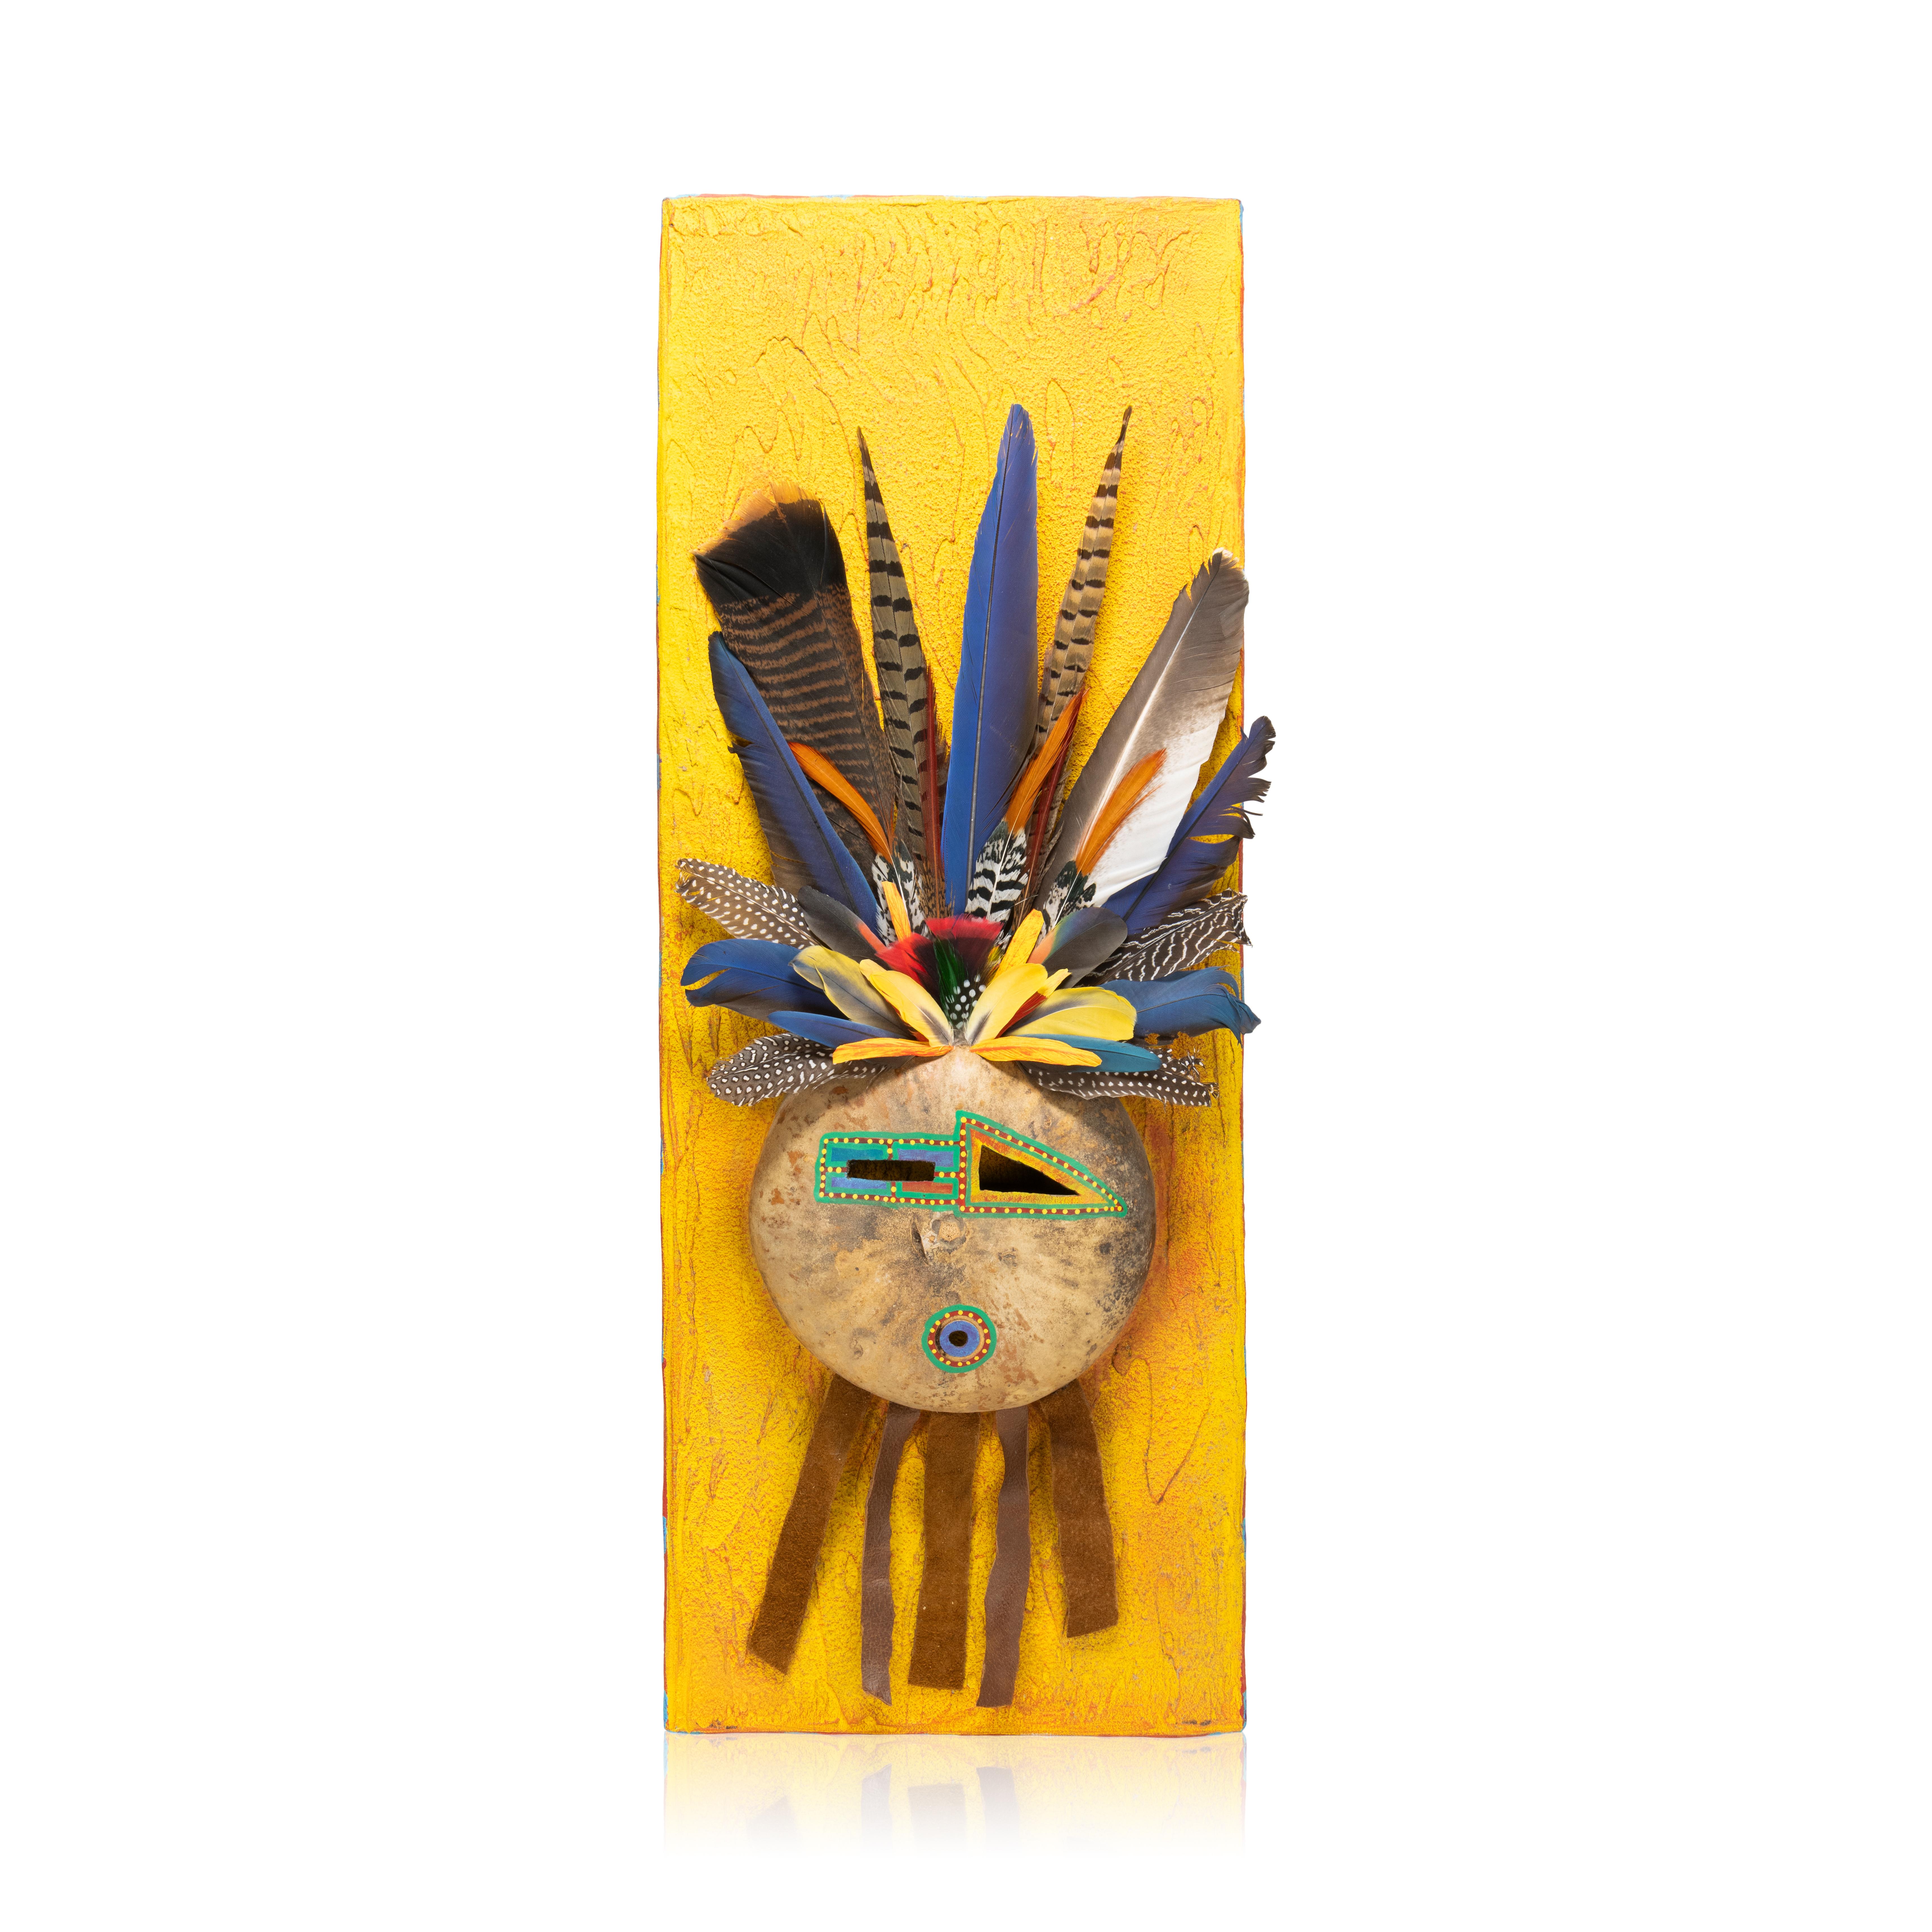 Sioux-Schamanenmasken mit zusätzlichen Kürbissen und Federn von Doug Fountain. Doug verkörpert den Geist und die Kraft des großen amerikanischen Indianers. Als direkter Nachfahre des legendären Häuptlings Sitting Bull sind Doug und seine Familie